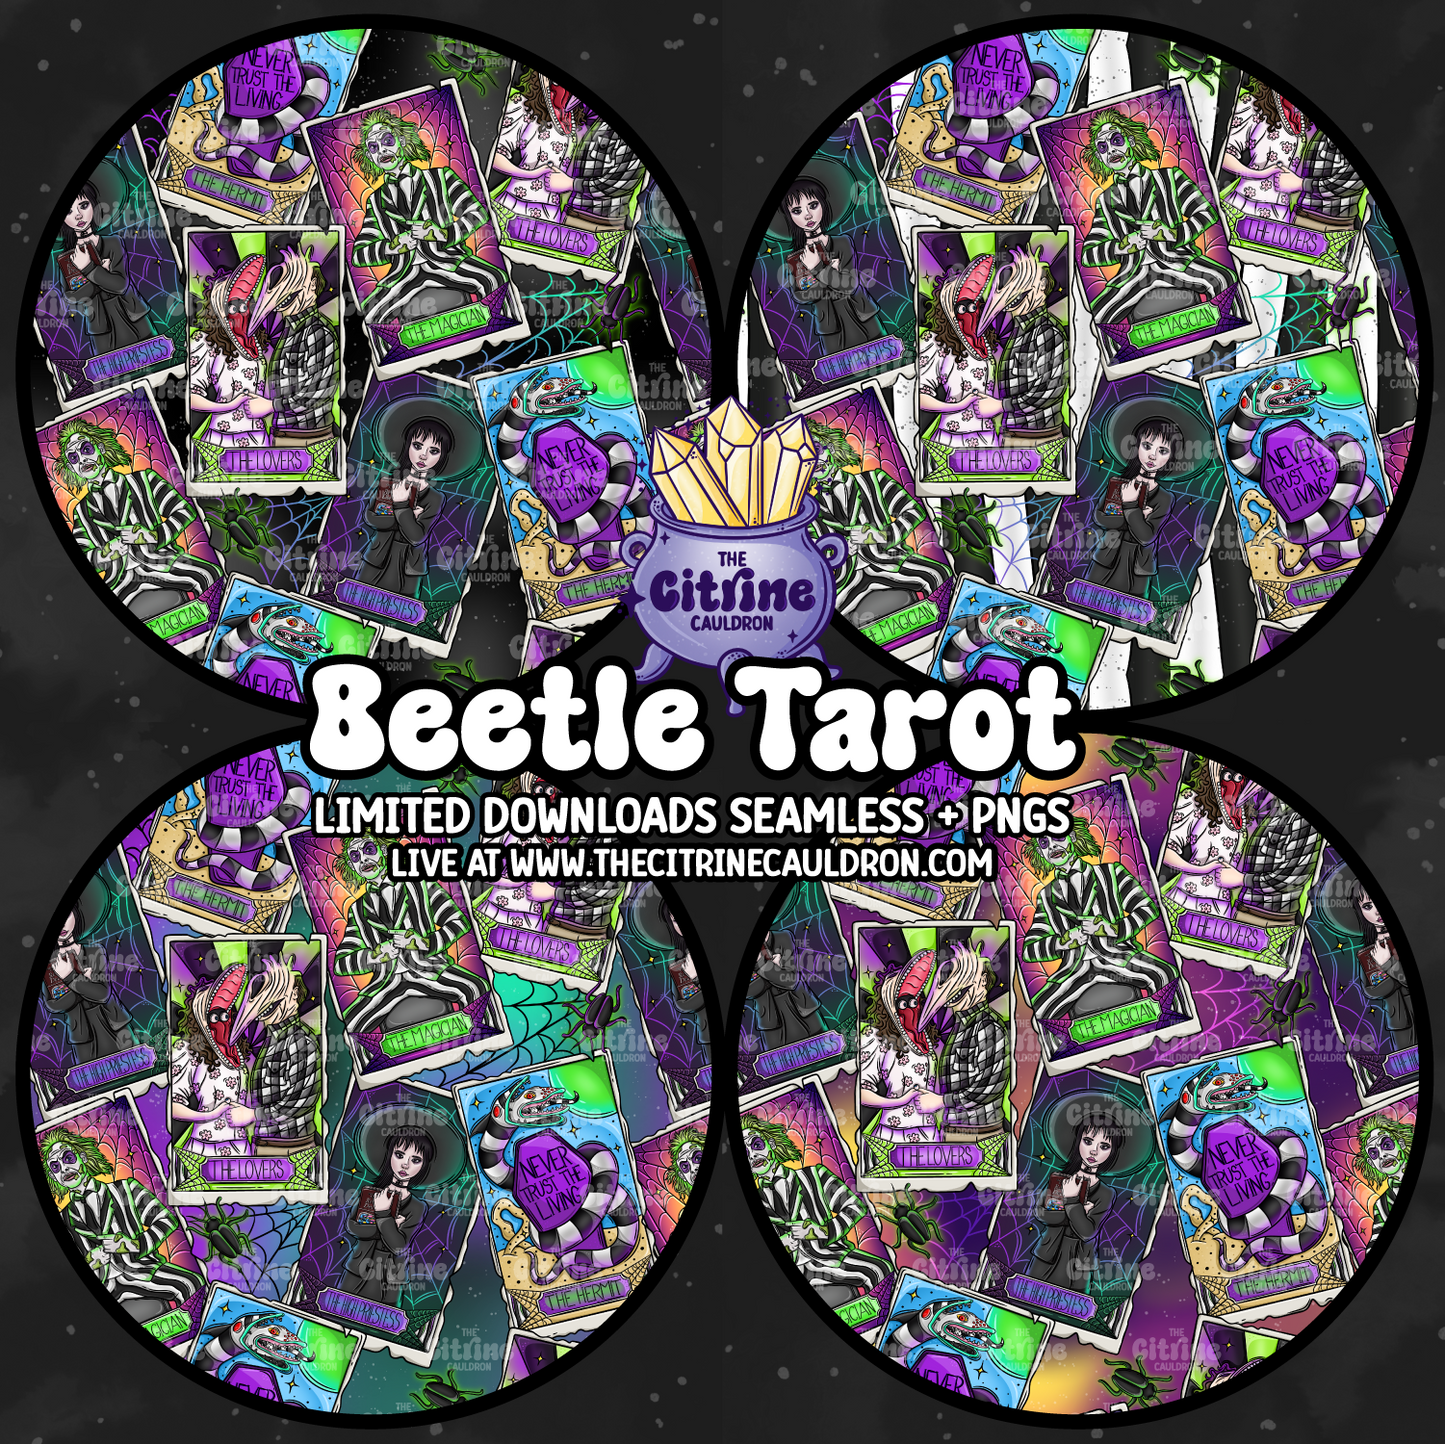 Beetle Tarot - Seamless